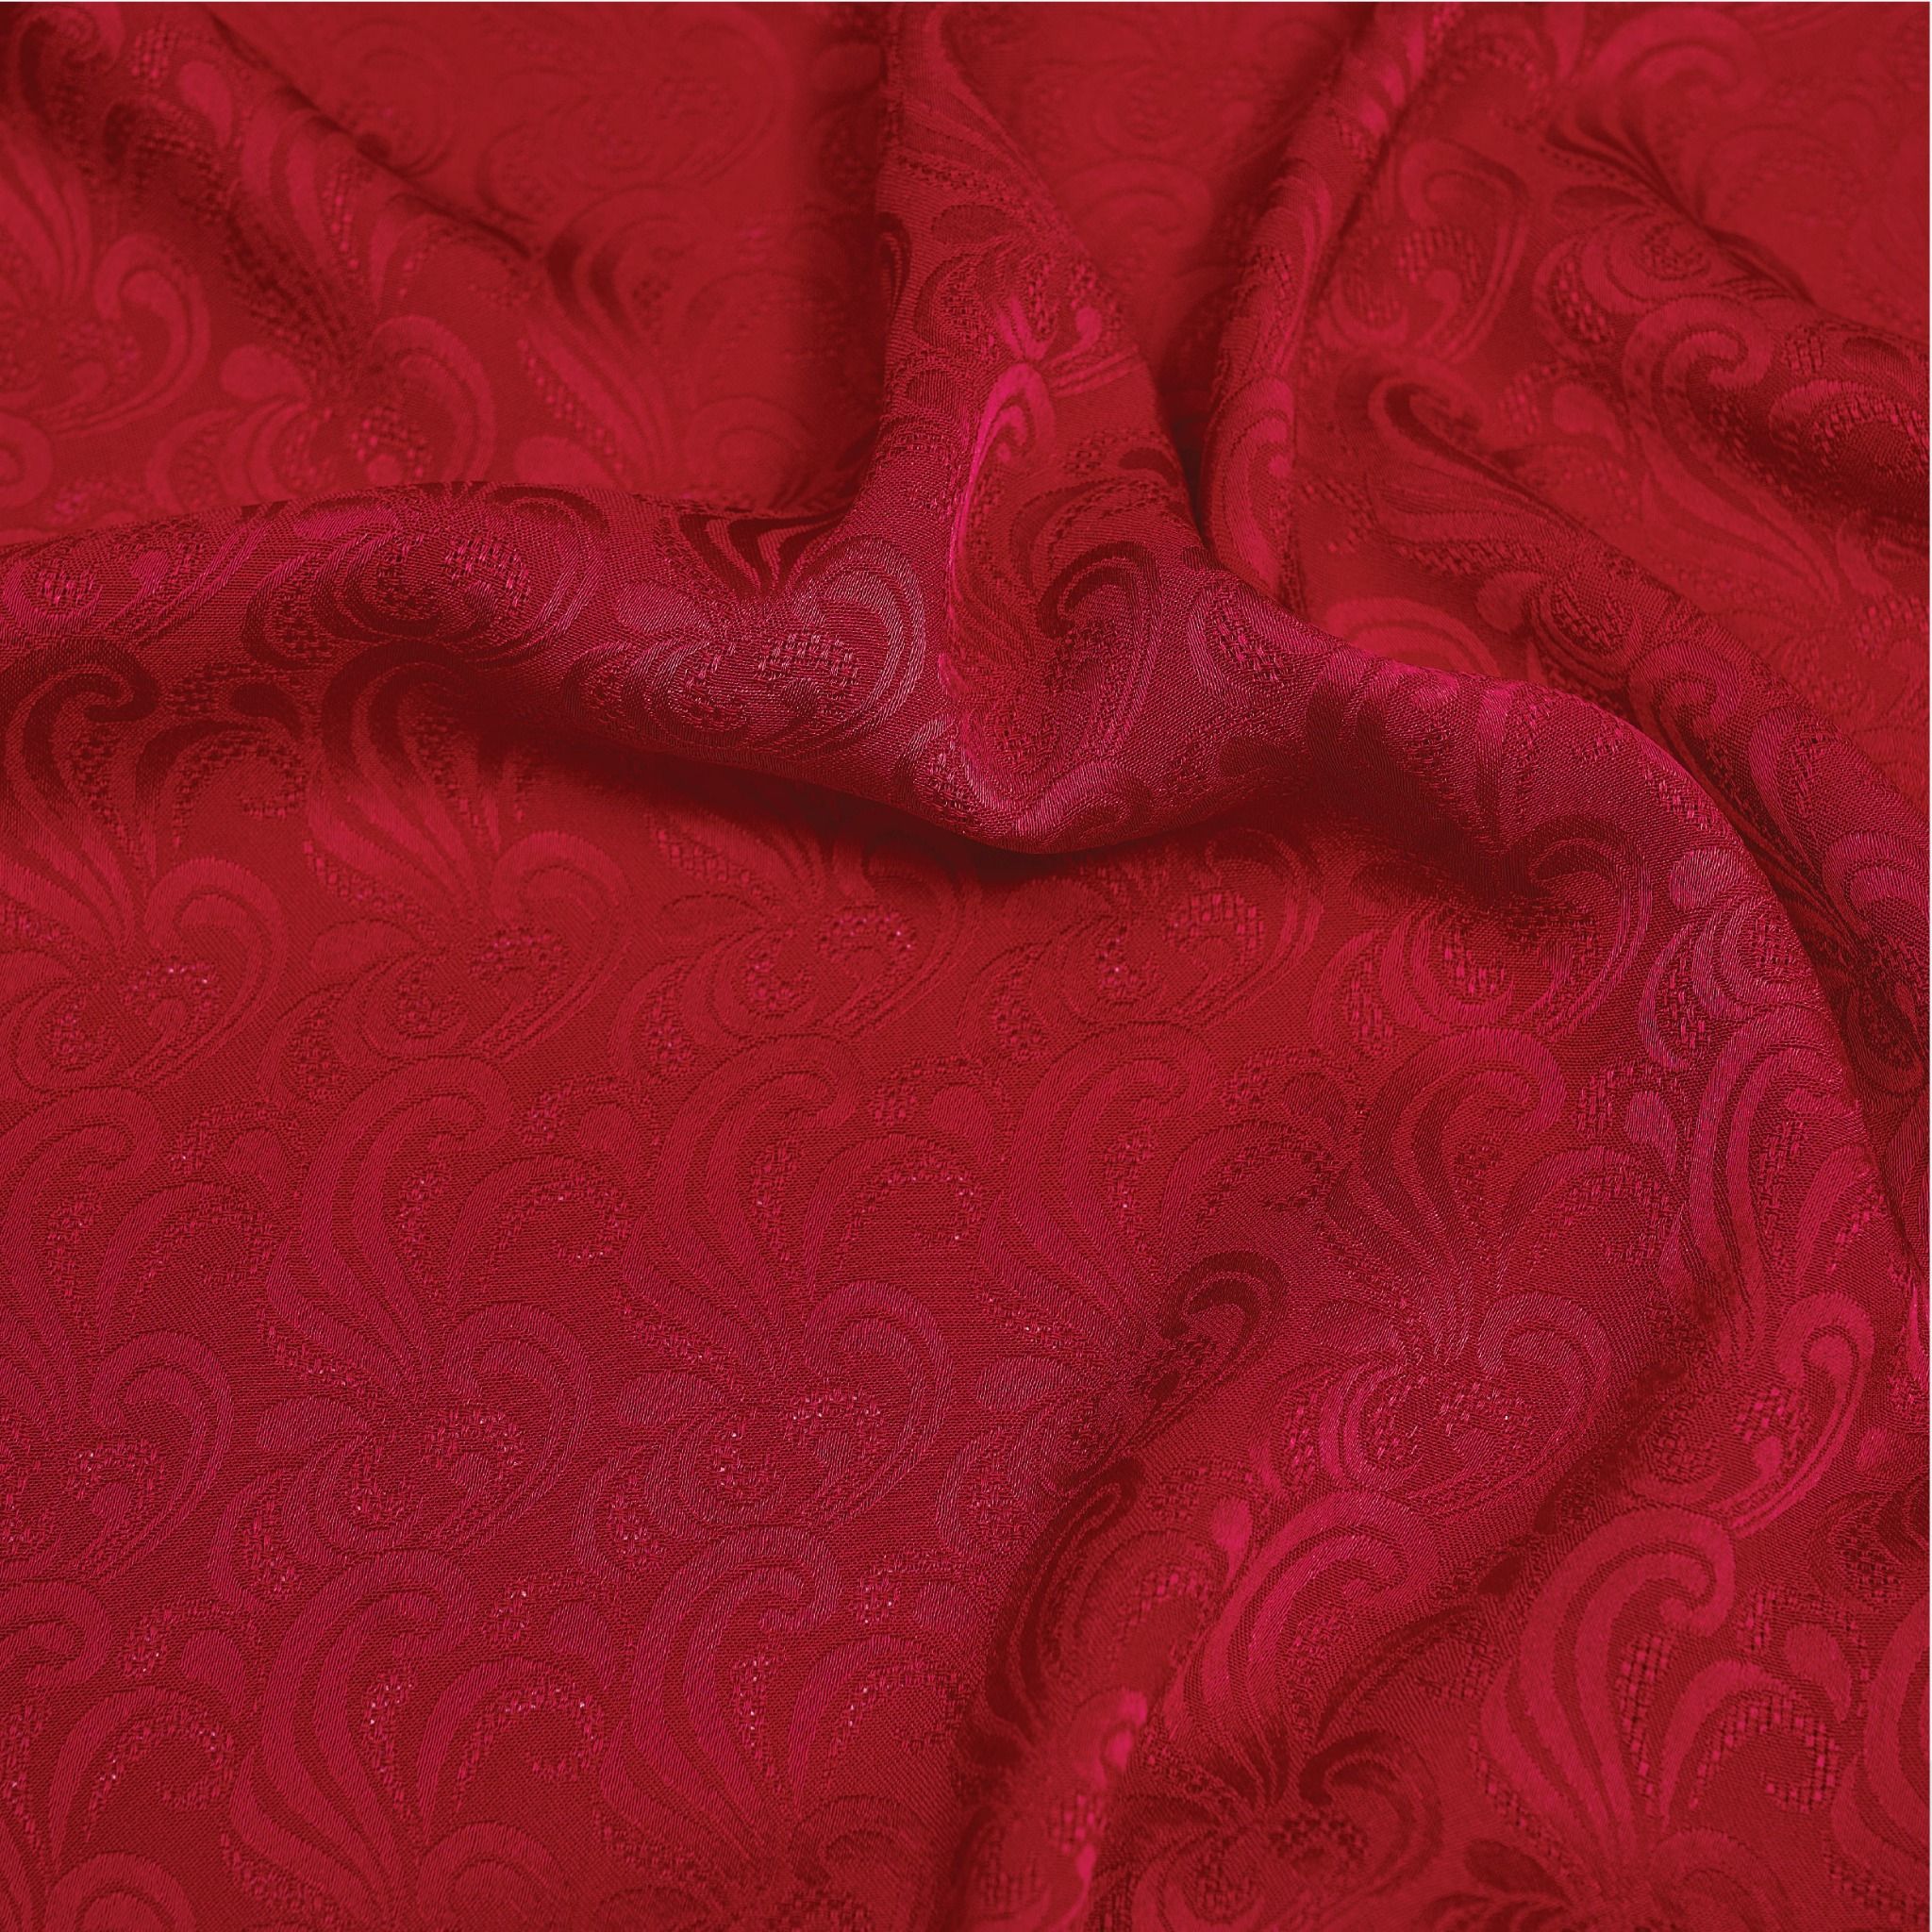 DYAN001031 Vải Gấm Mộc Vân Màu Đỏ Khổ 1m15